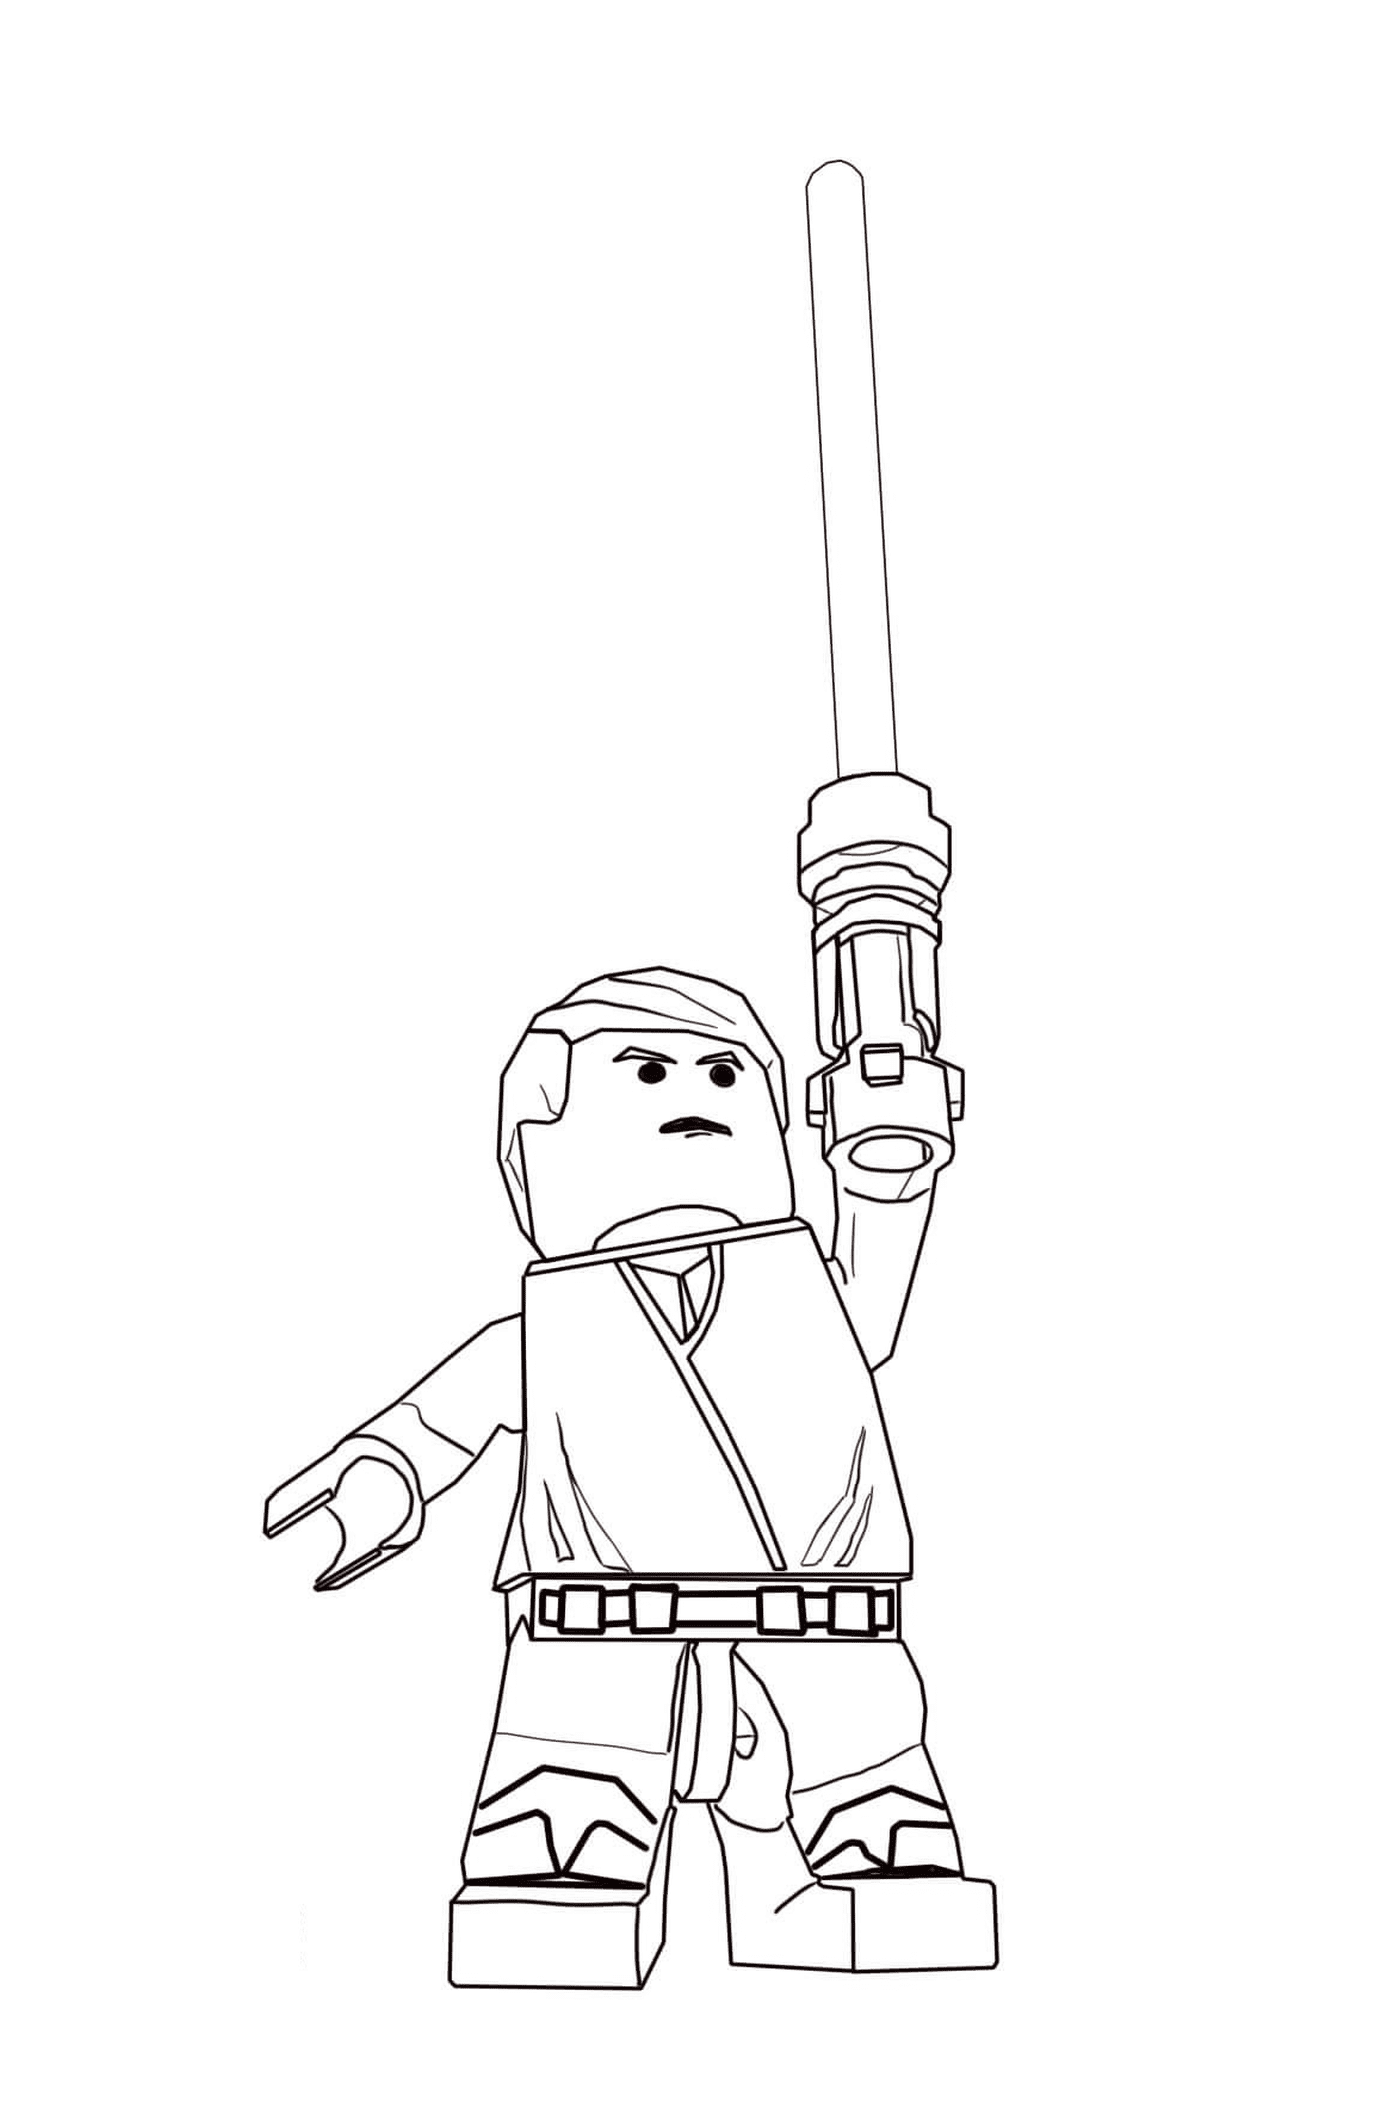  Персонаж Lego Star Wars с лазерным мечом 